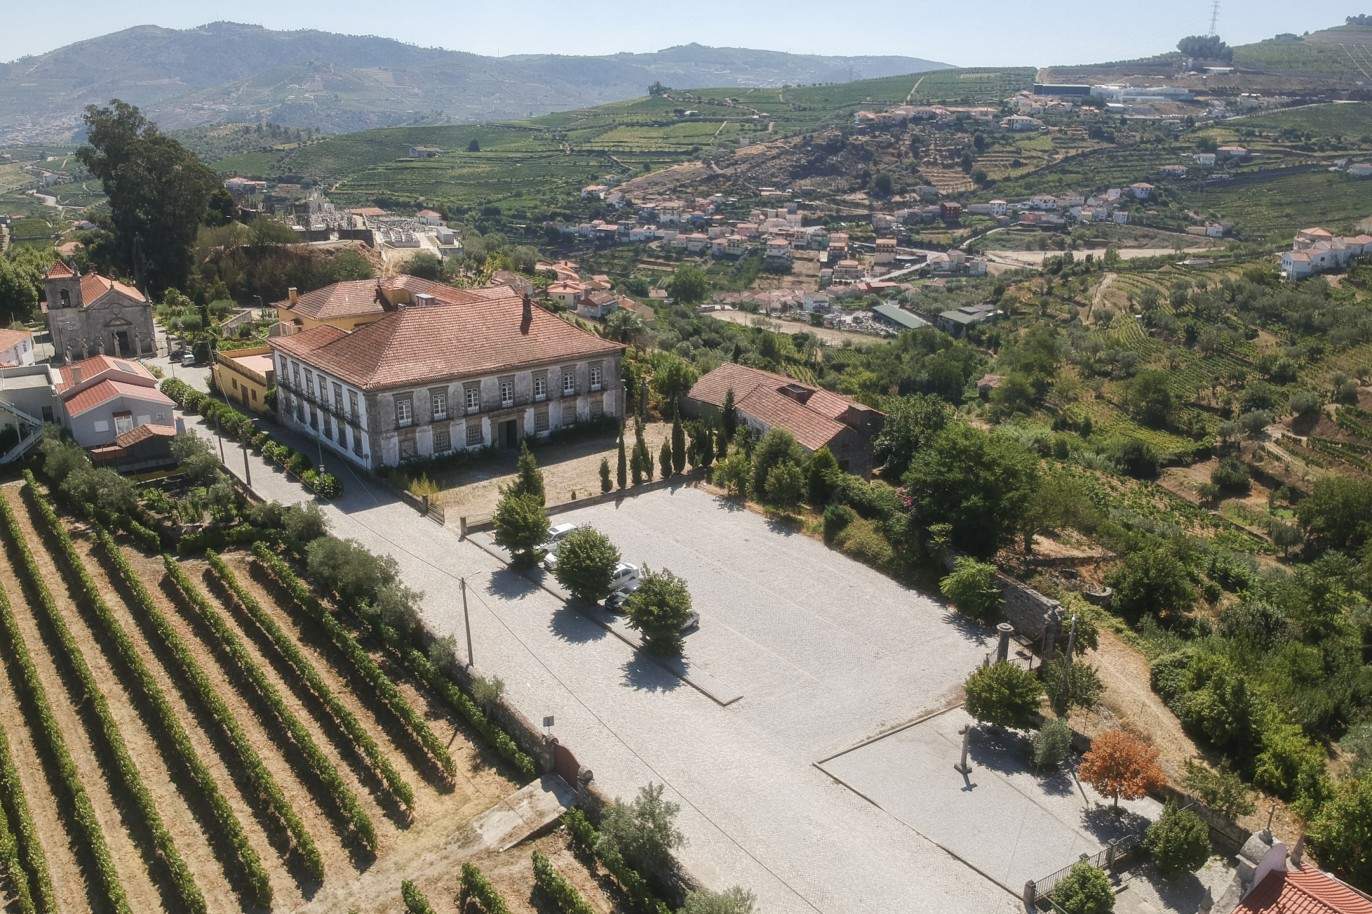 Vente : restauration du Palacete avec jardins et fontaine centenaire, à Lamego, Valeé du Douro, nord du Portugal_207356